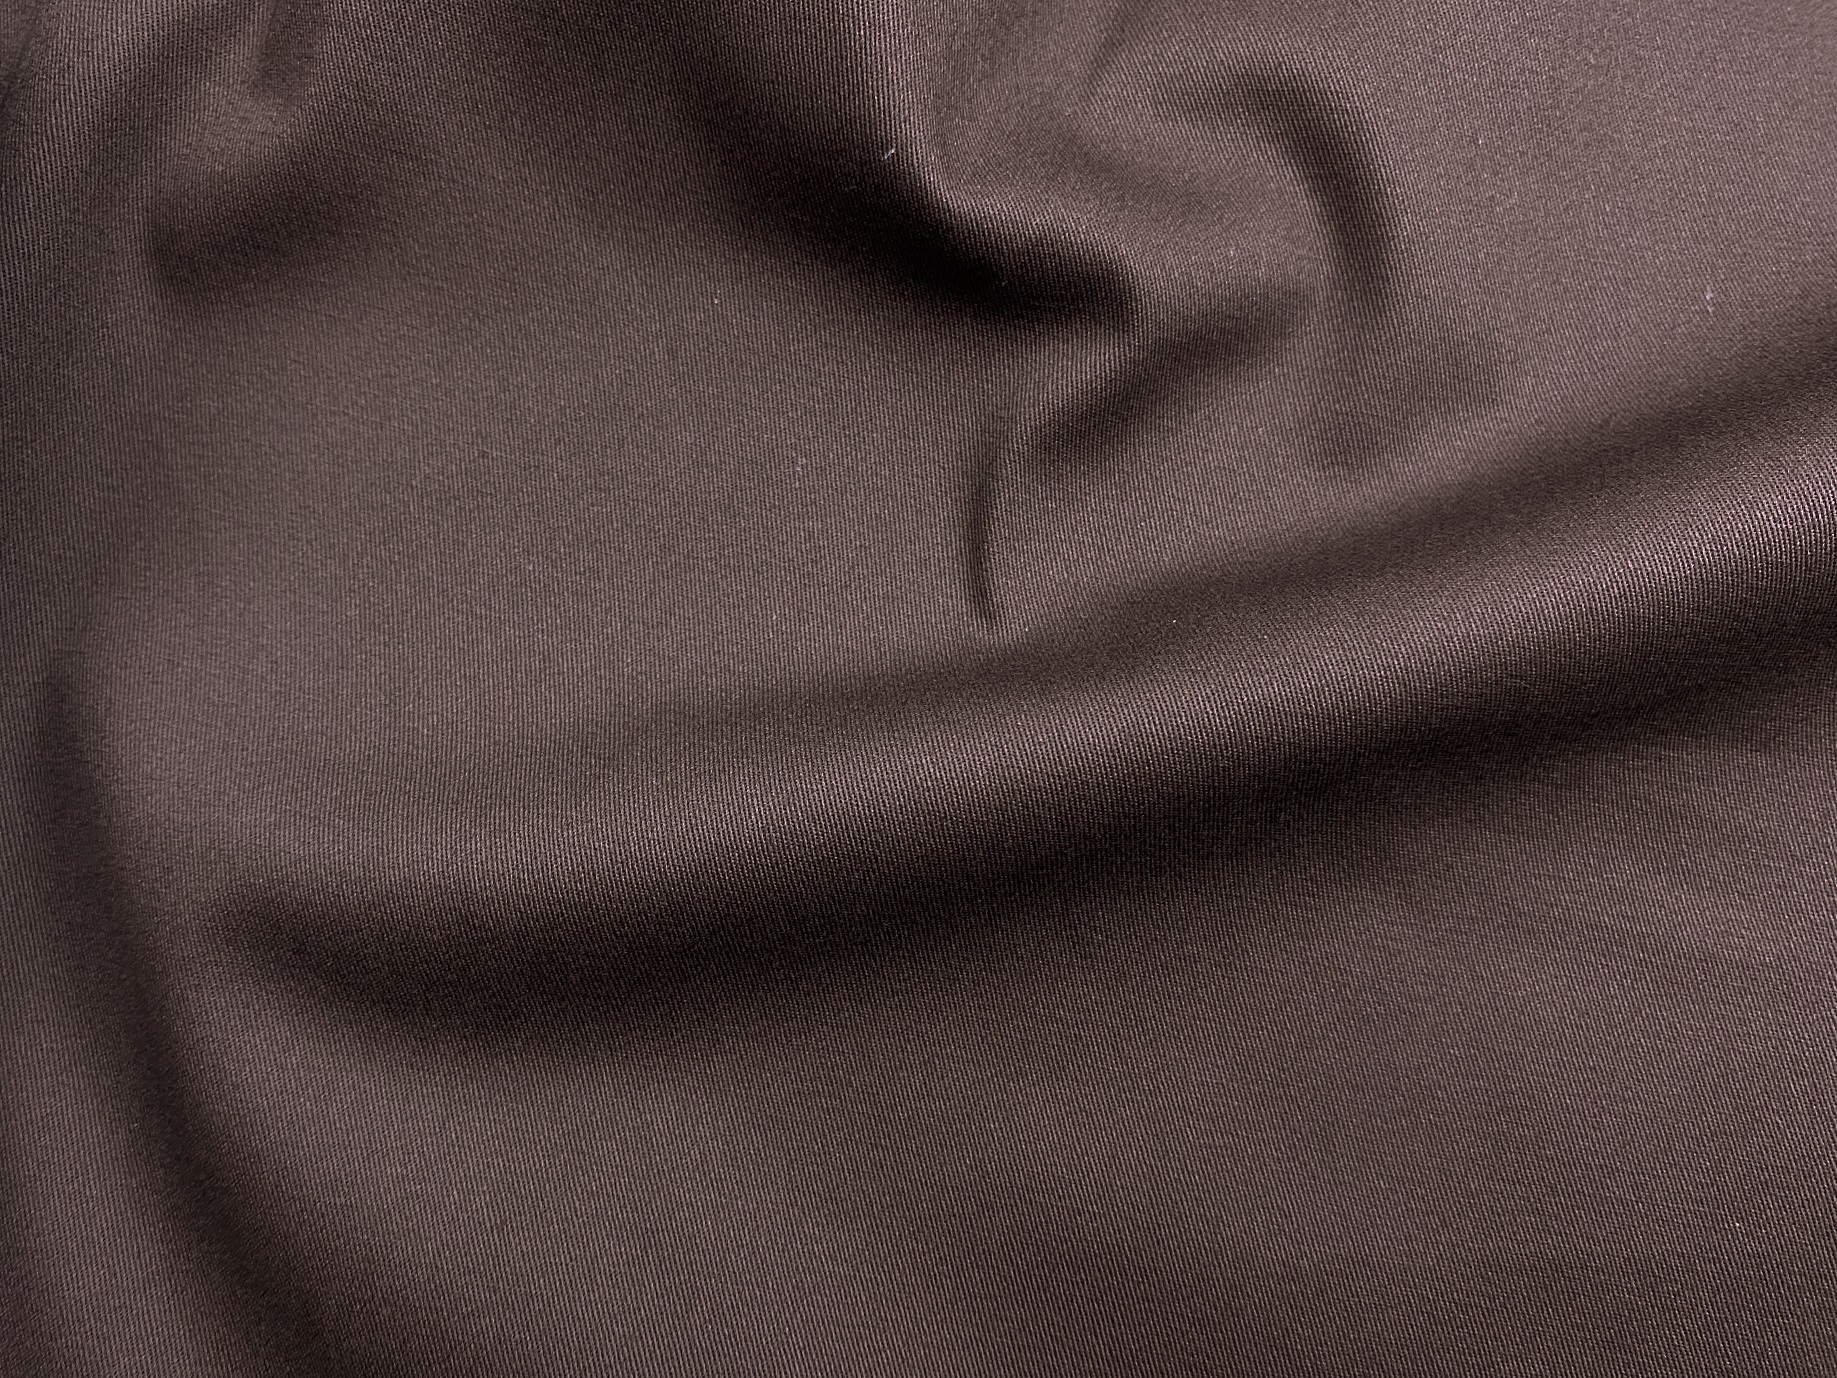 Ткань Хлопок  шоколадного цвета однотонная 16851 2